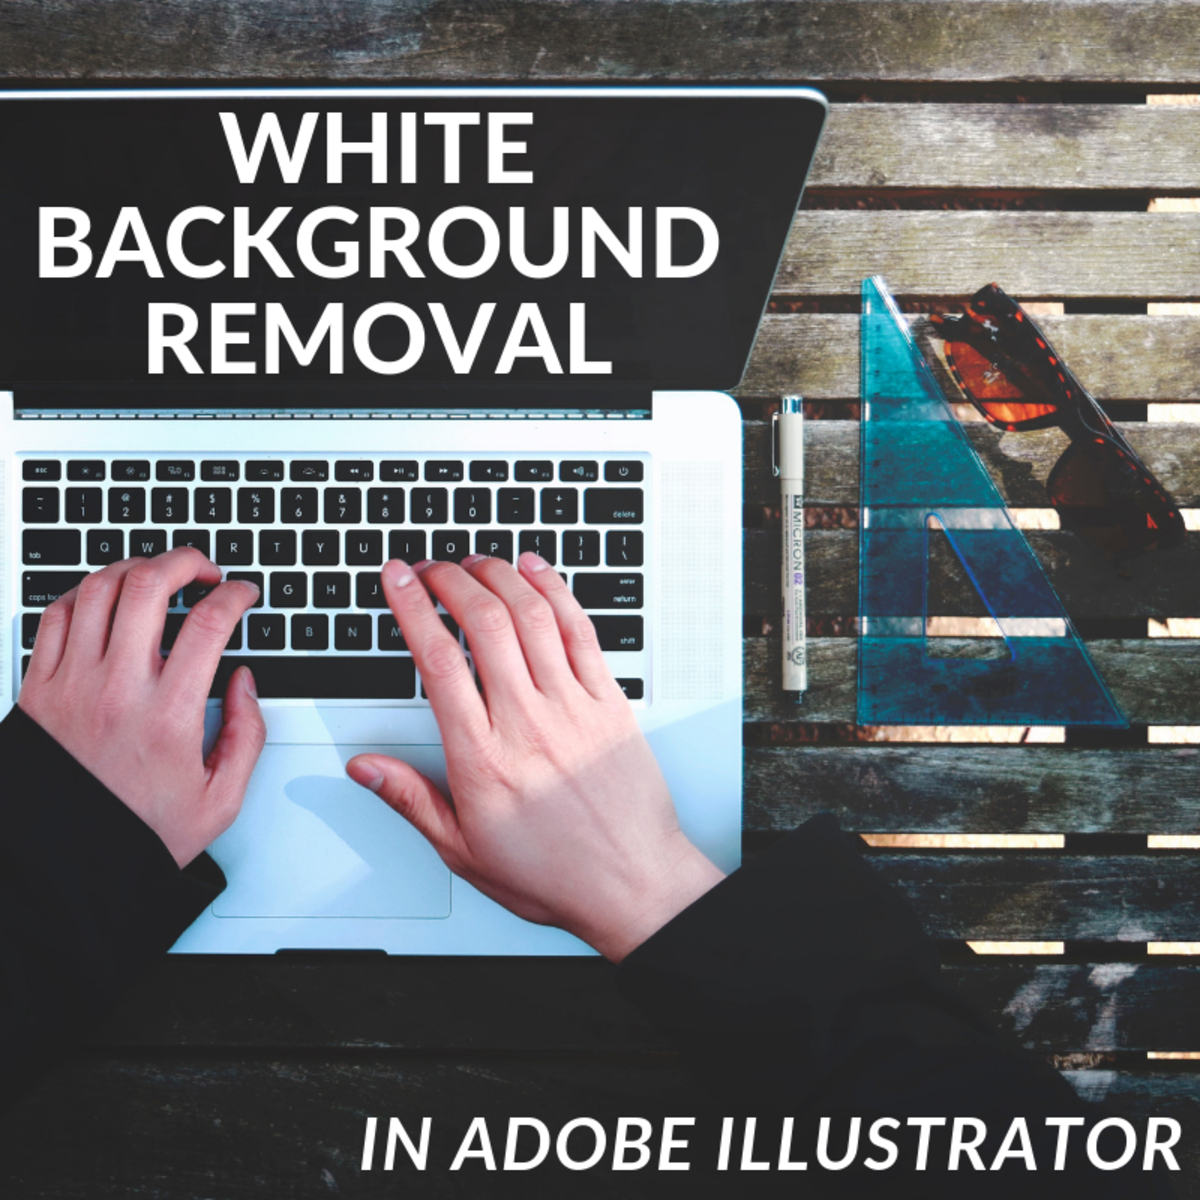 Nếu bạn muốn sử dụng file .jpeg mà không muốn bị hạn chế bởi nền trắng, hãy tìm hiểu cách xóa nền trắng .jpeg trong Illustrator. Với chỉ vài thao tác đơn giản, bạn có thể tạo ra một ảnh độc đáo và chuyên nghiệp cho bất kỳ mục đích nào bạn muốn.